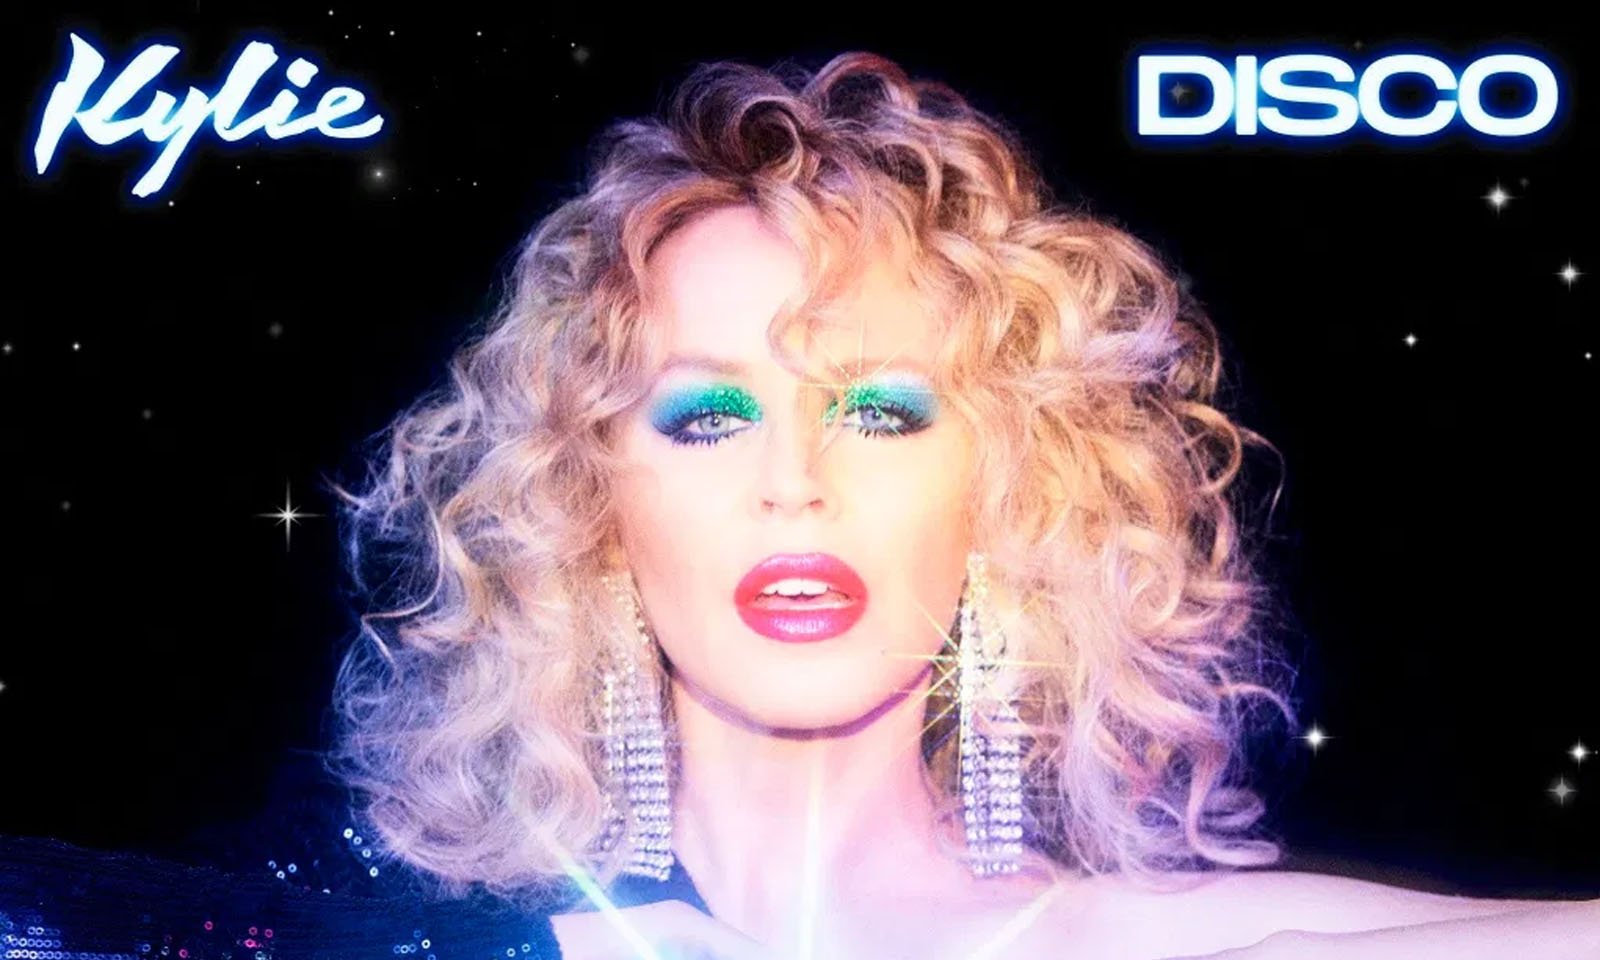 Kylie Minogue lança “Disco”, seu 15° álbum de estúdio